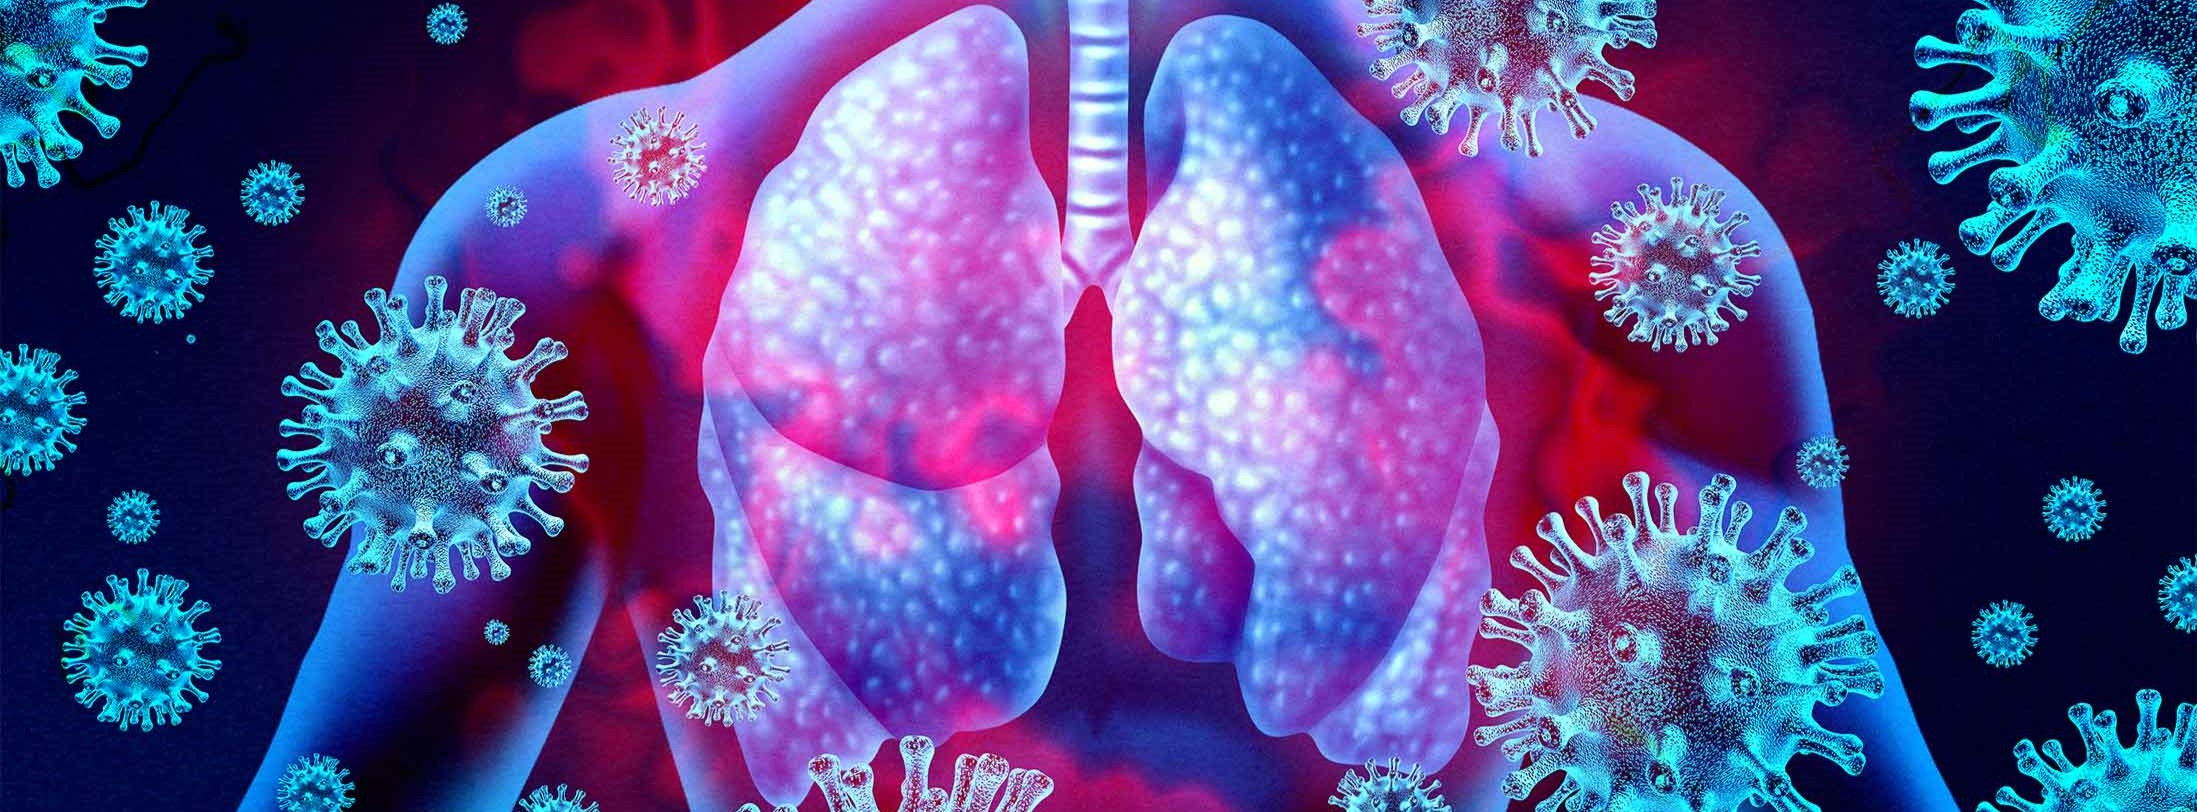 El Covid-19 modifica el microbioma pulmonar a lo largo del tiempo...